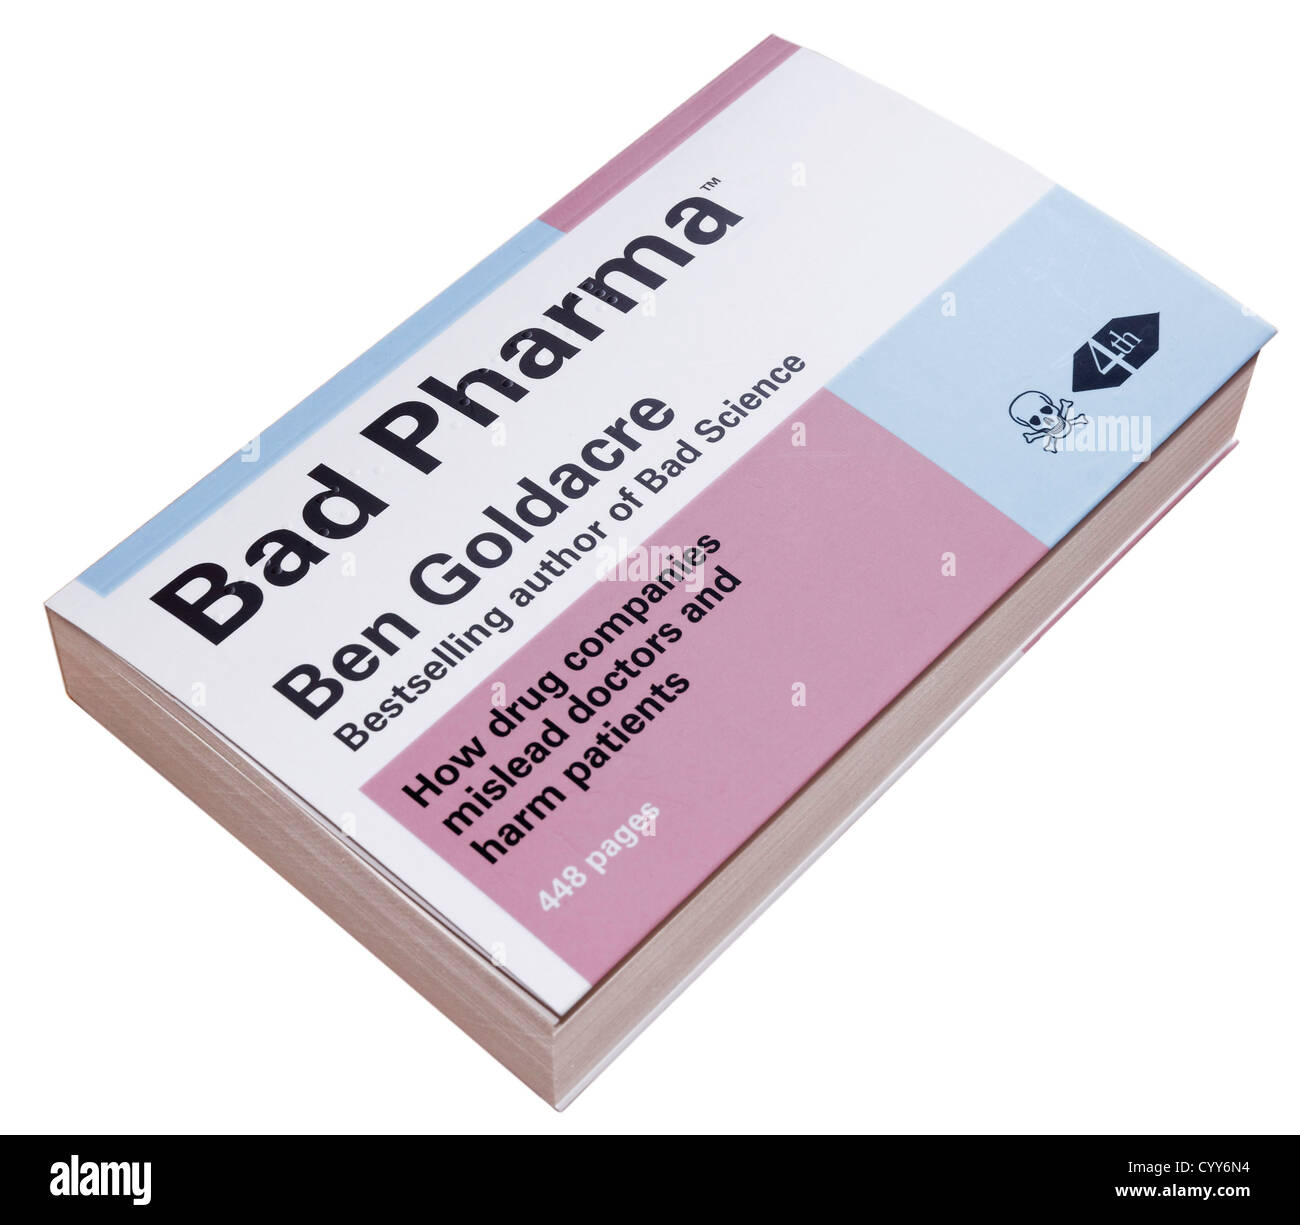 Bad Pharma par Ben Goldacre Banque D'Images